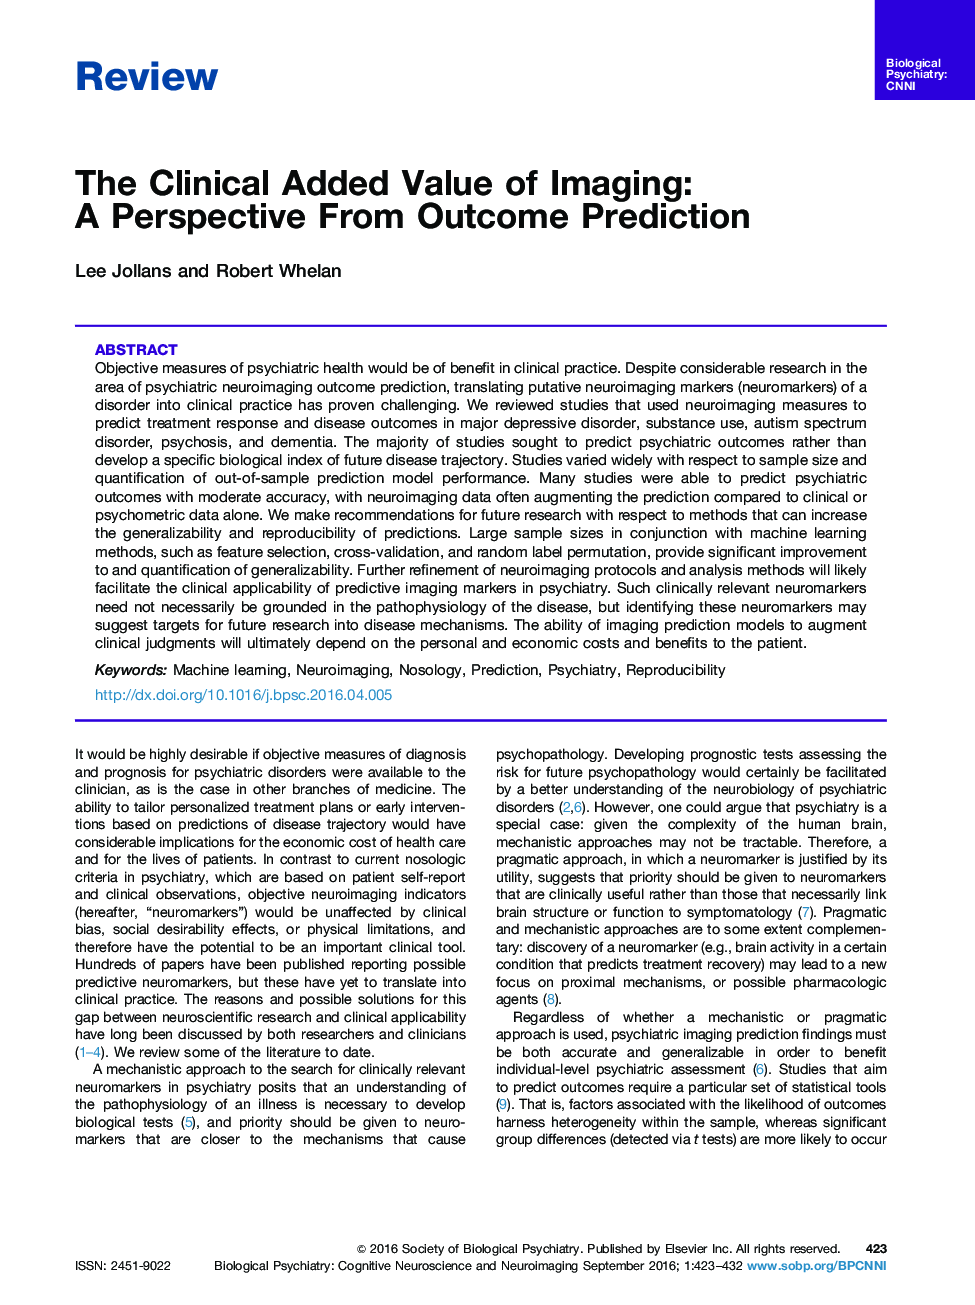 ارزش افزوده بالینی تصویربرداری: چشم انداز از پیش بینی نتایج 